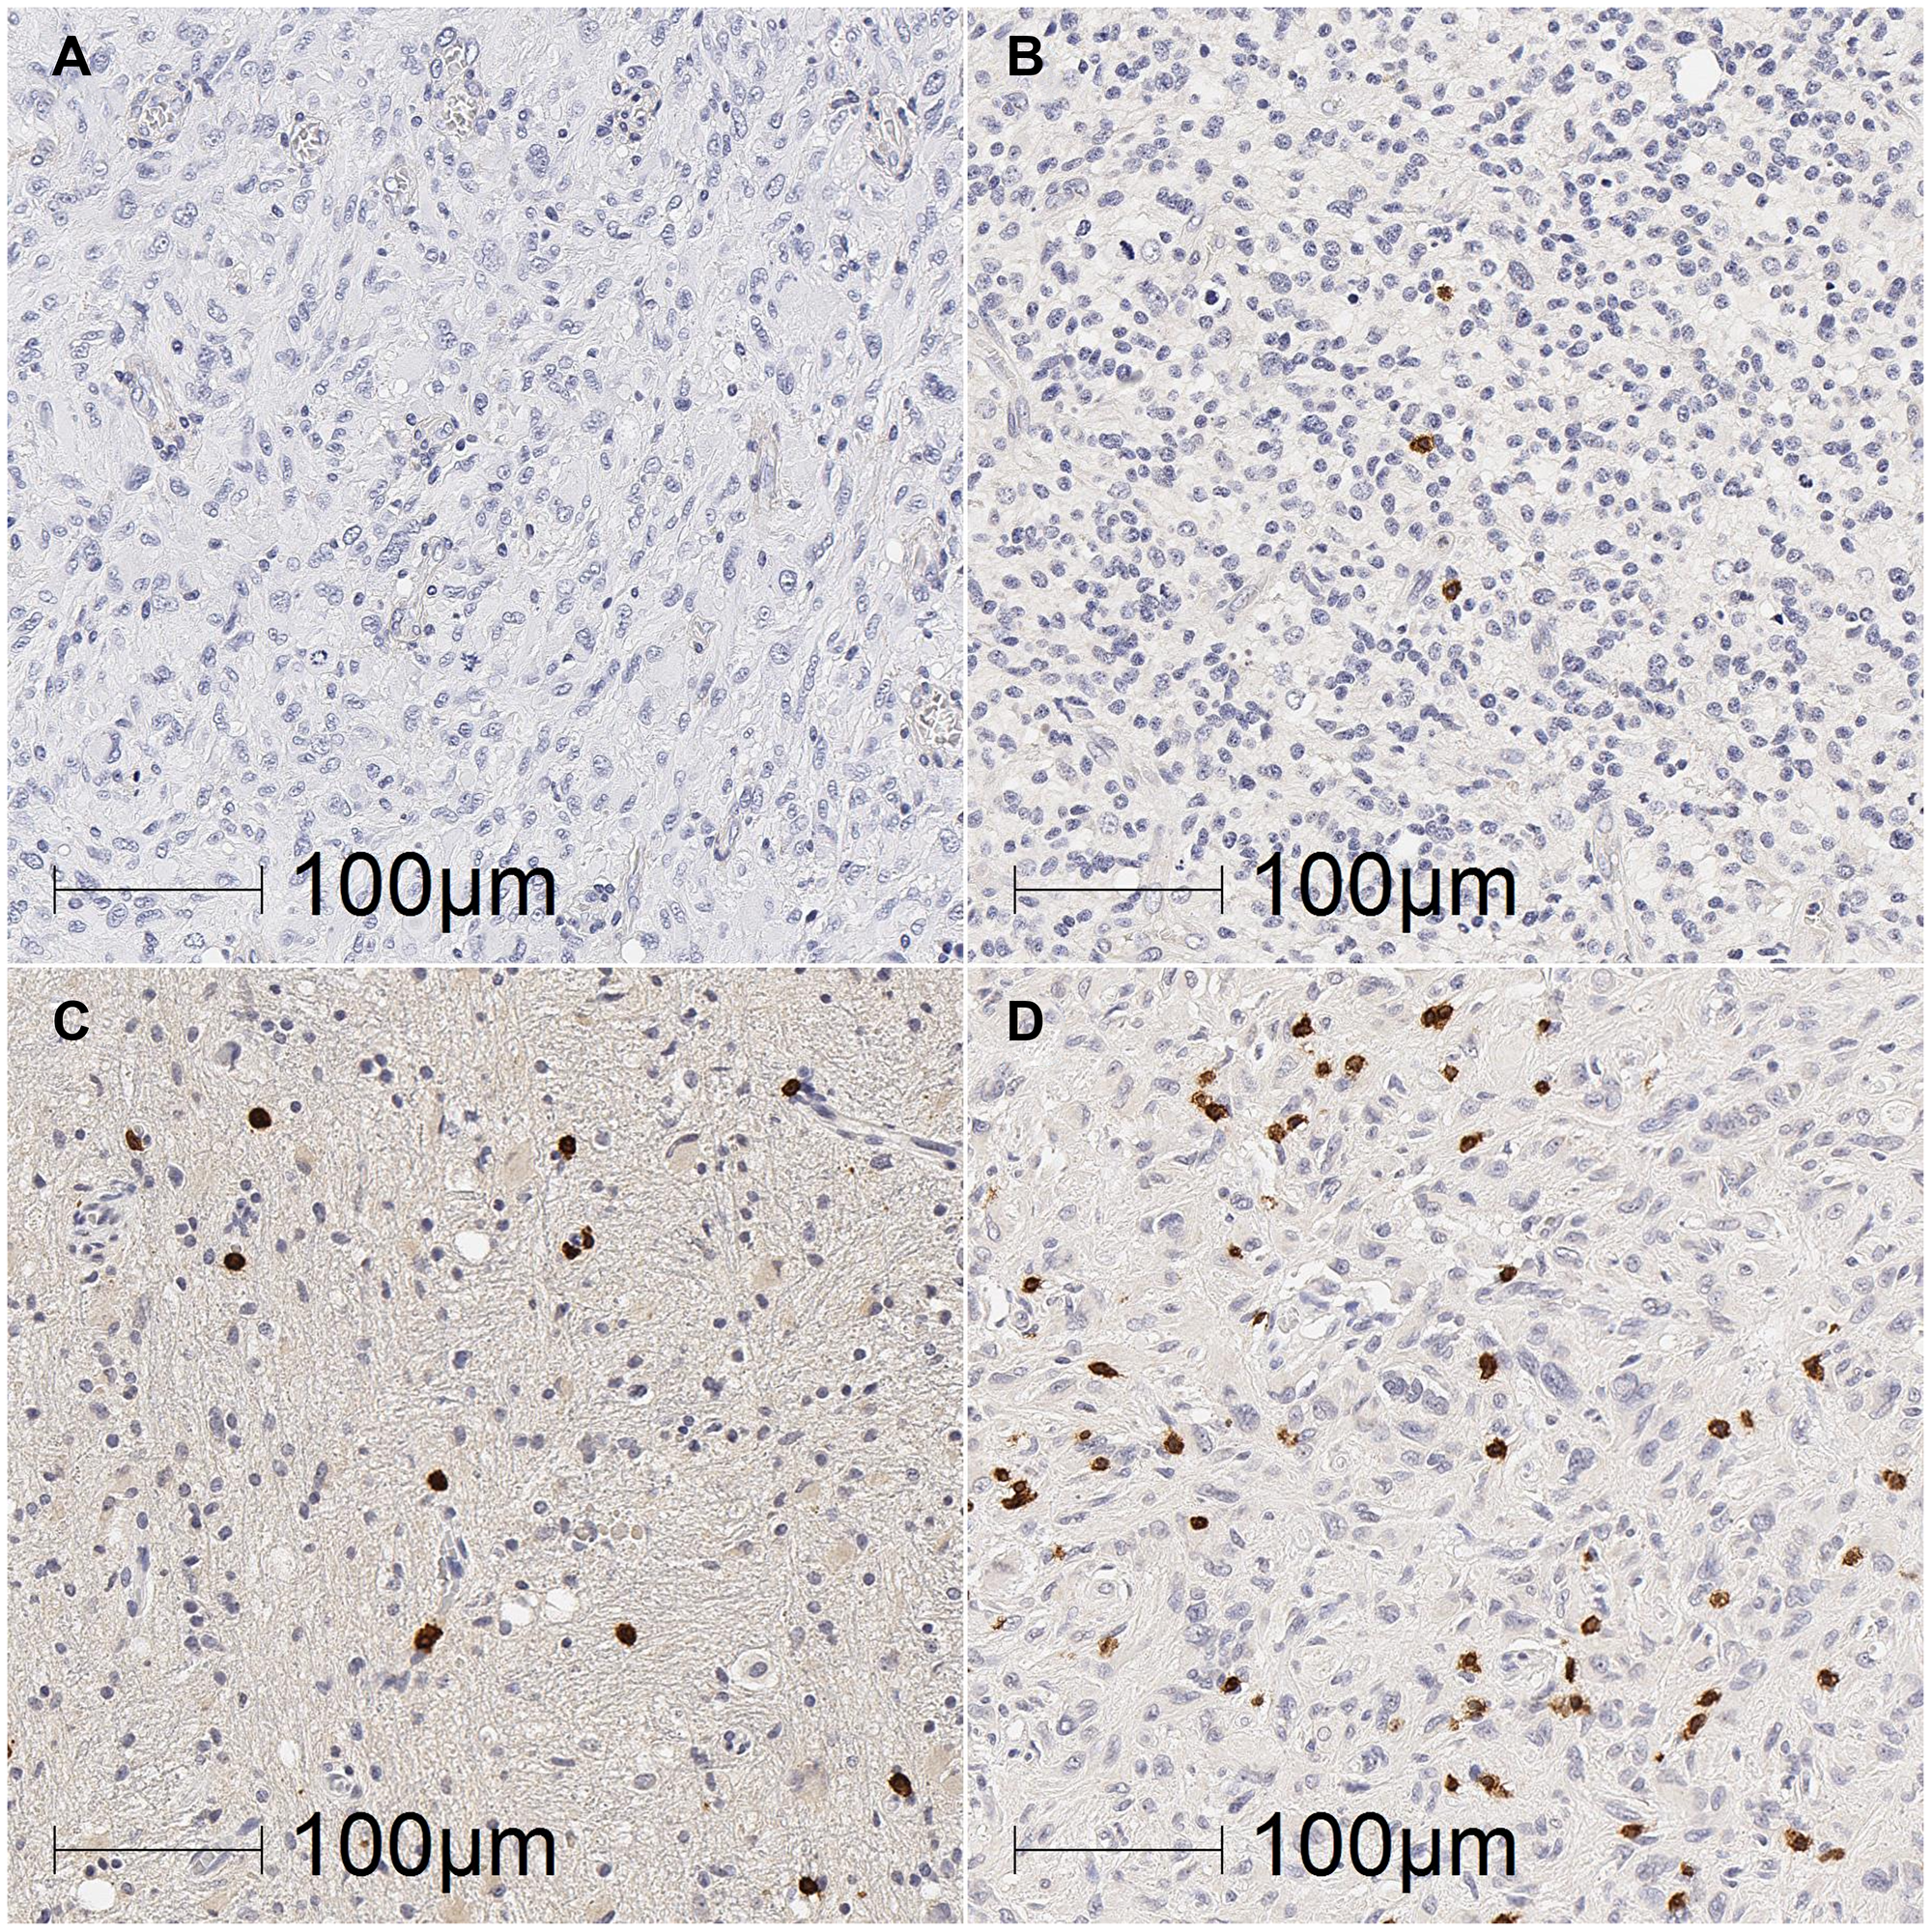 Representative images of TIL density in glioblastoma tumours.